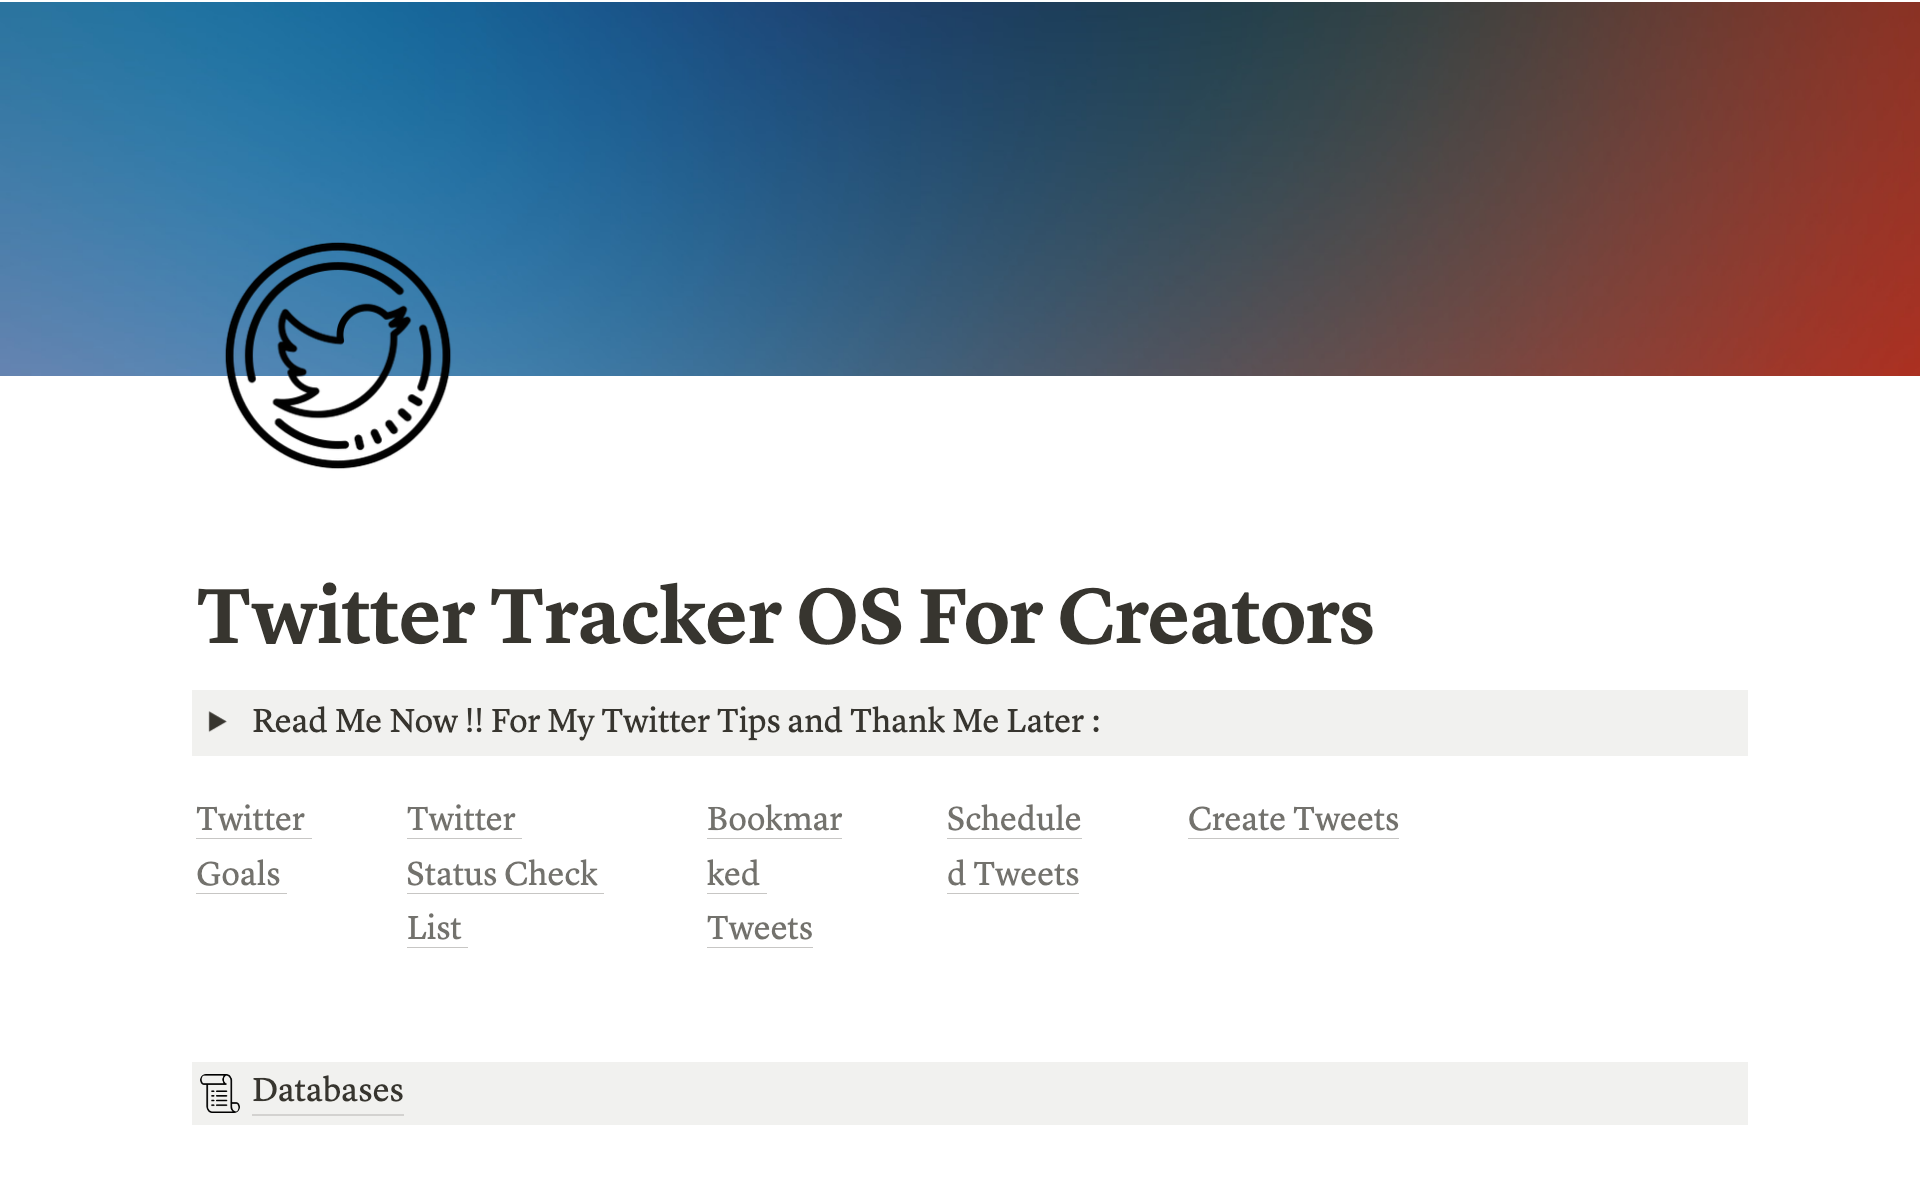 Vista previa de plantilla para Twitter OS For Creators